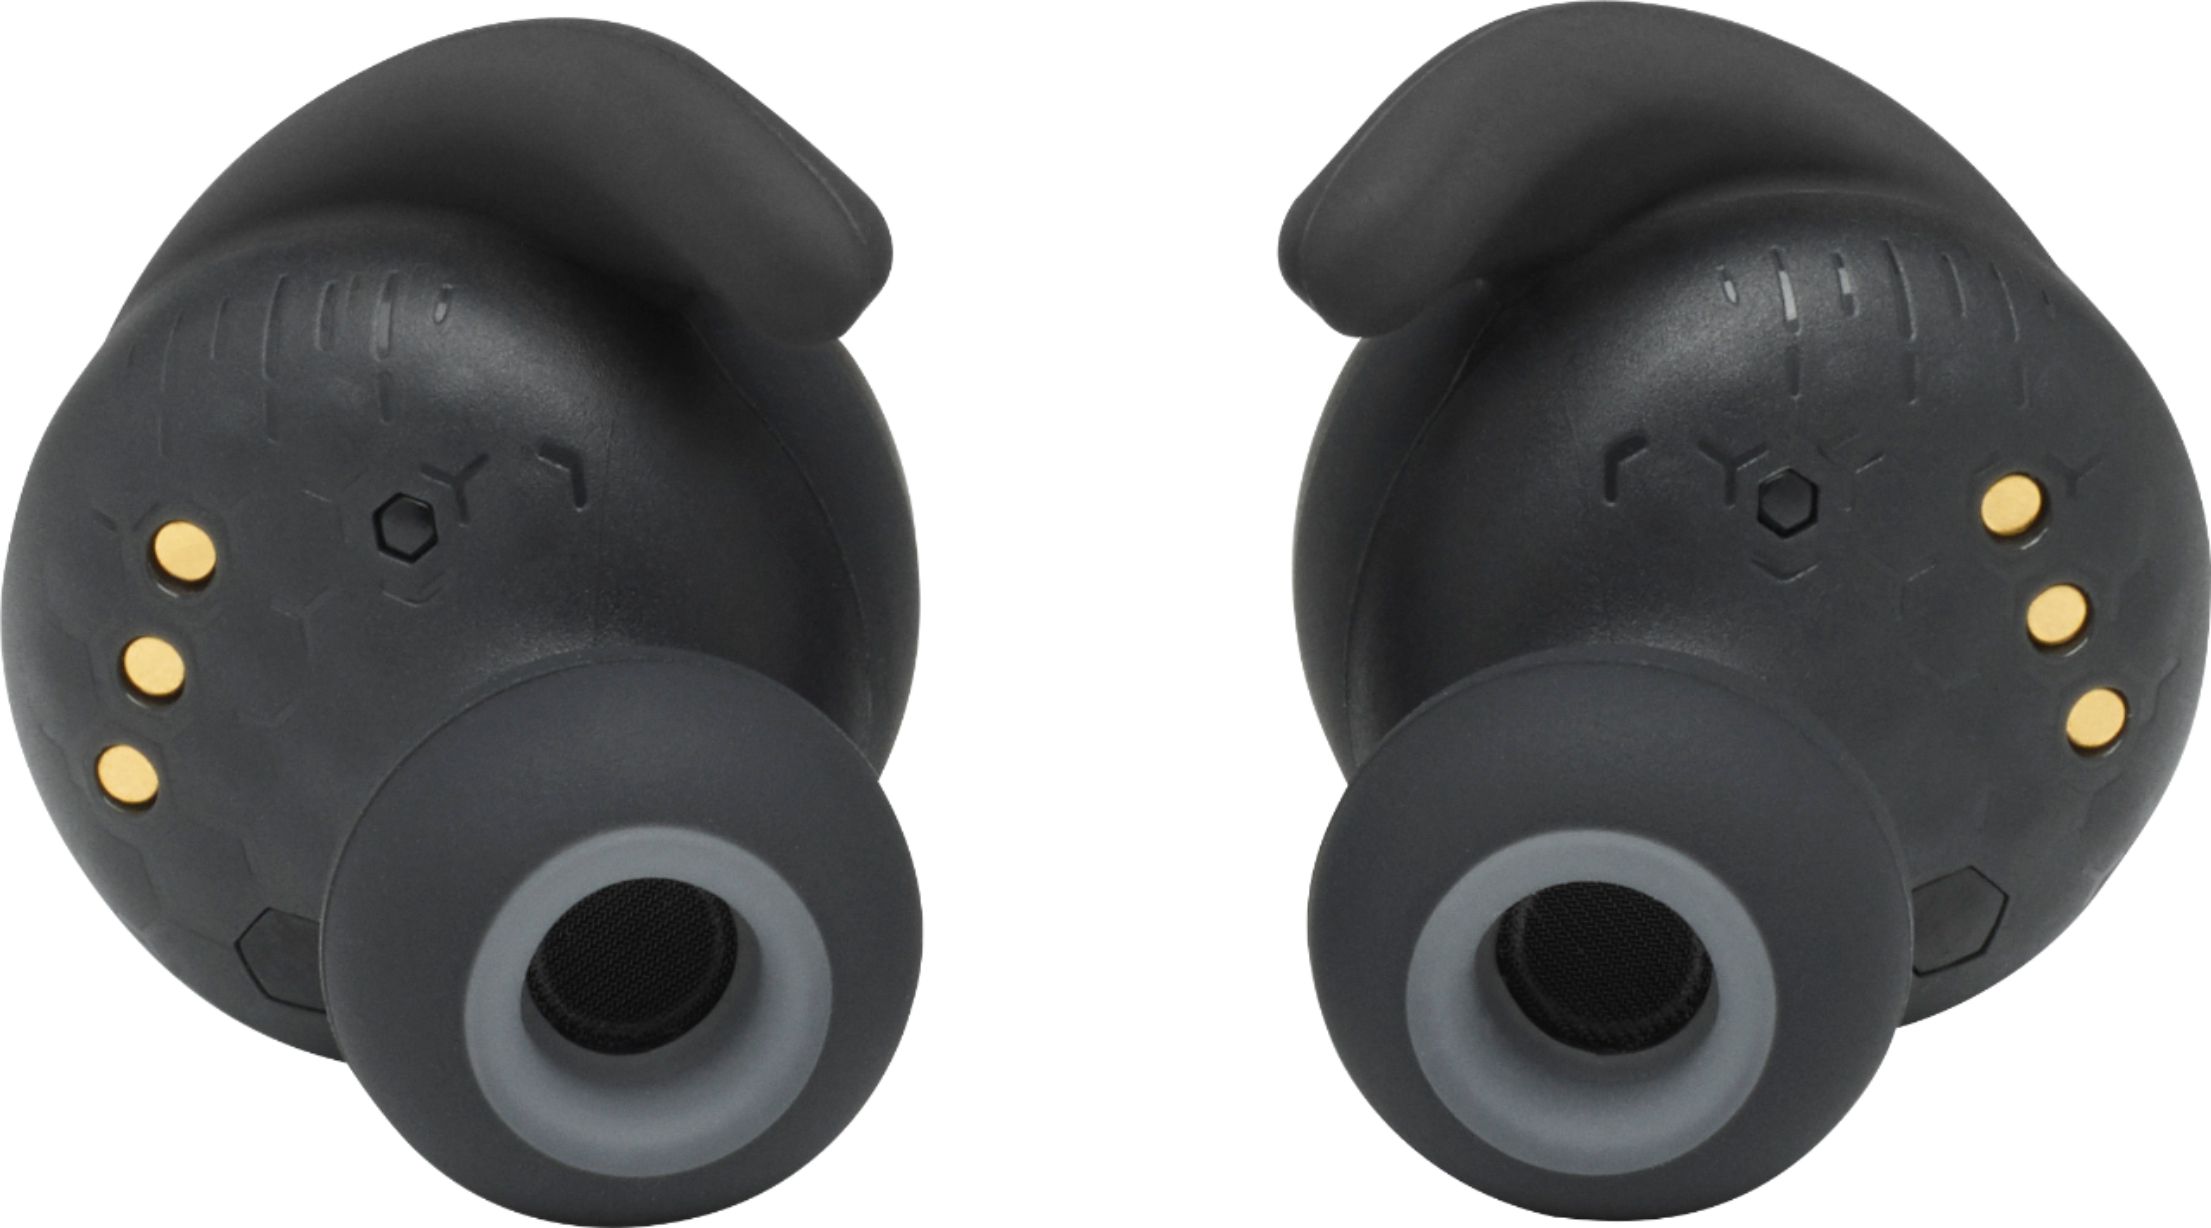 ankomme Museum Lappe JBL Reflect Mini True Wireless Noise Cancelling In-Ear Earbuds Black  JBLREFLMININCBLKAM - Best Buy